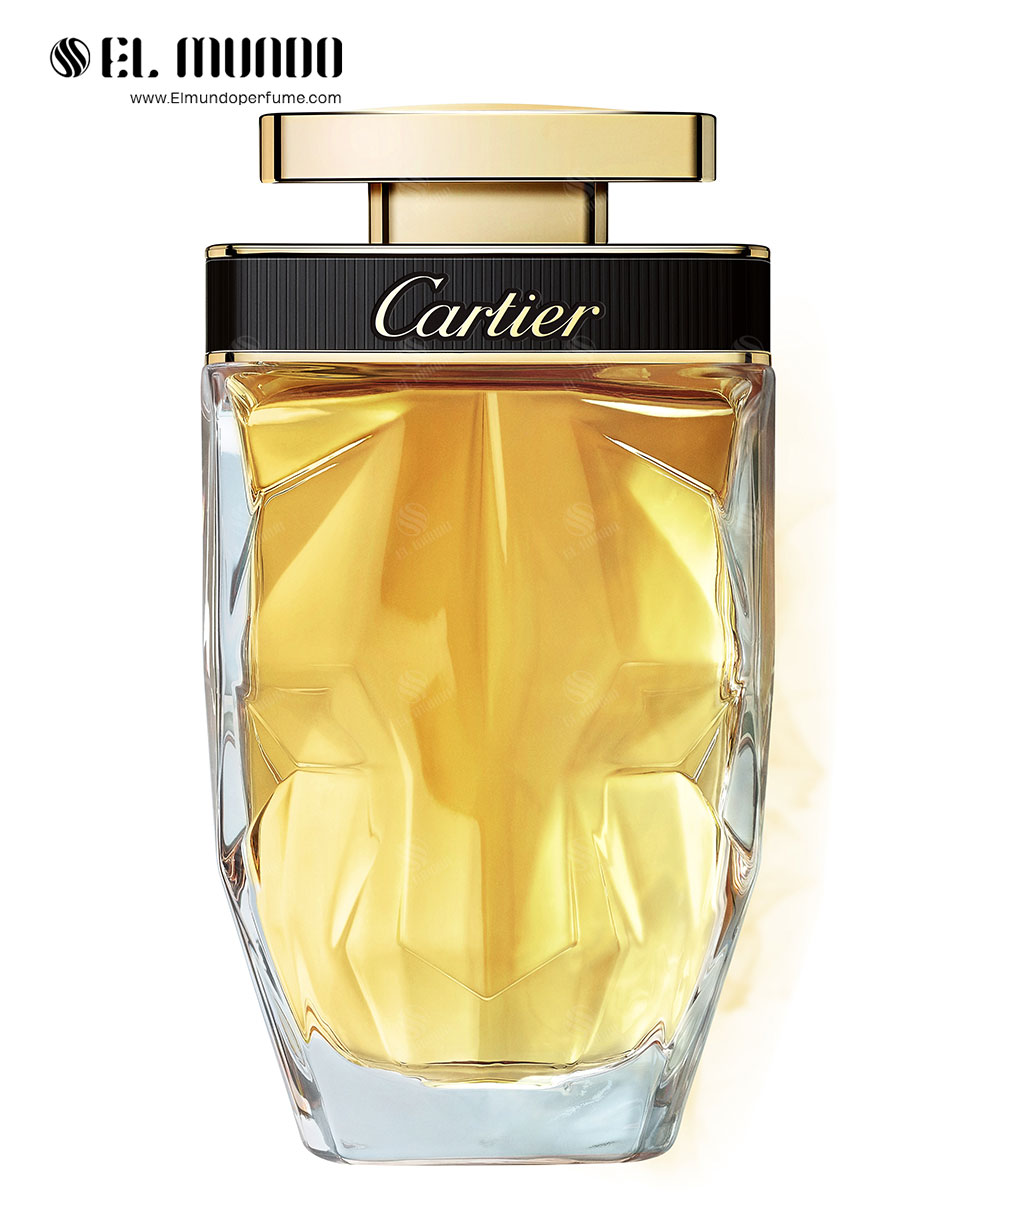 La Panthère Parfum Cartier for women 100ml - عطر کارتیر لا پانتیر پارفوم Cartier La Panthère Parfum 2020